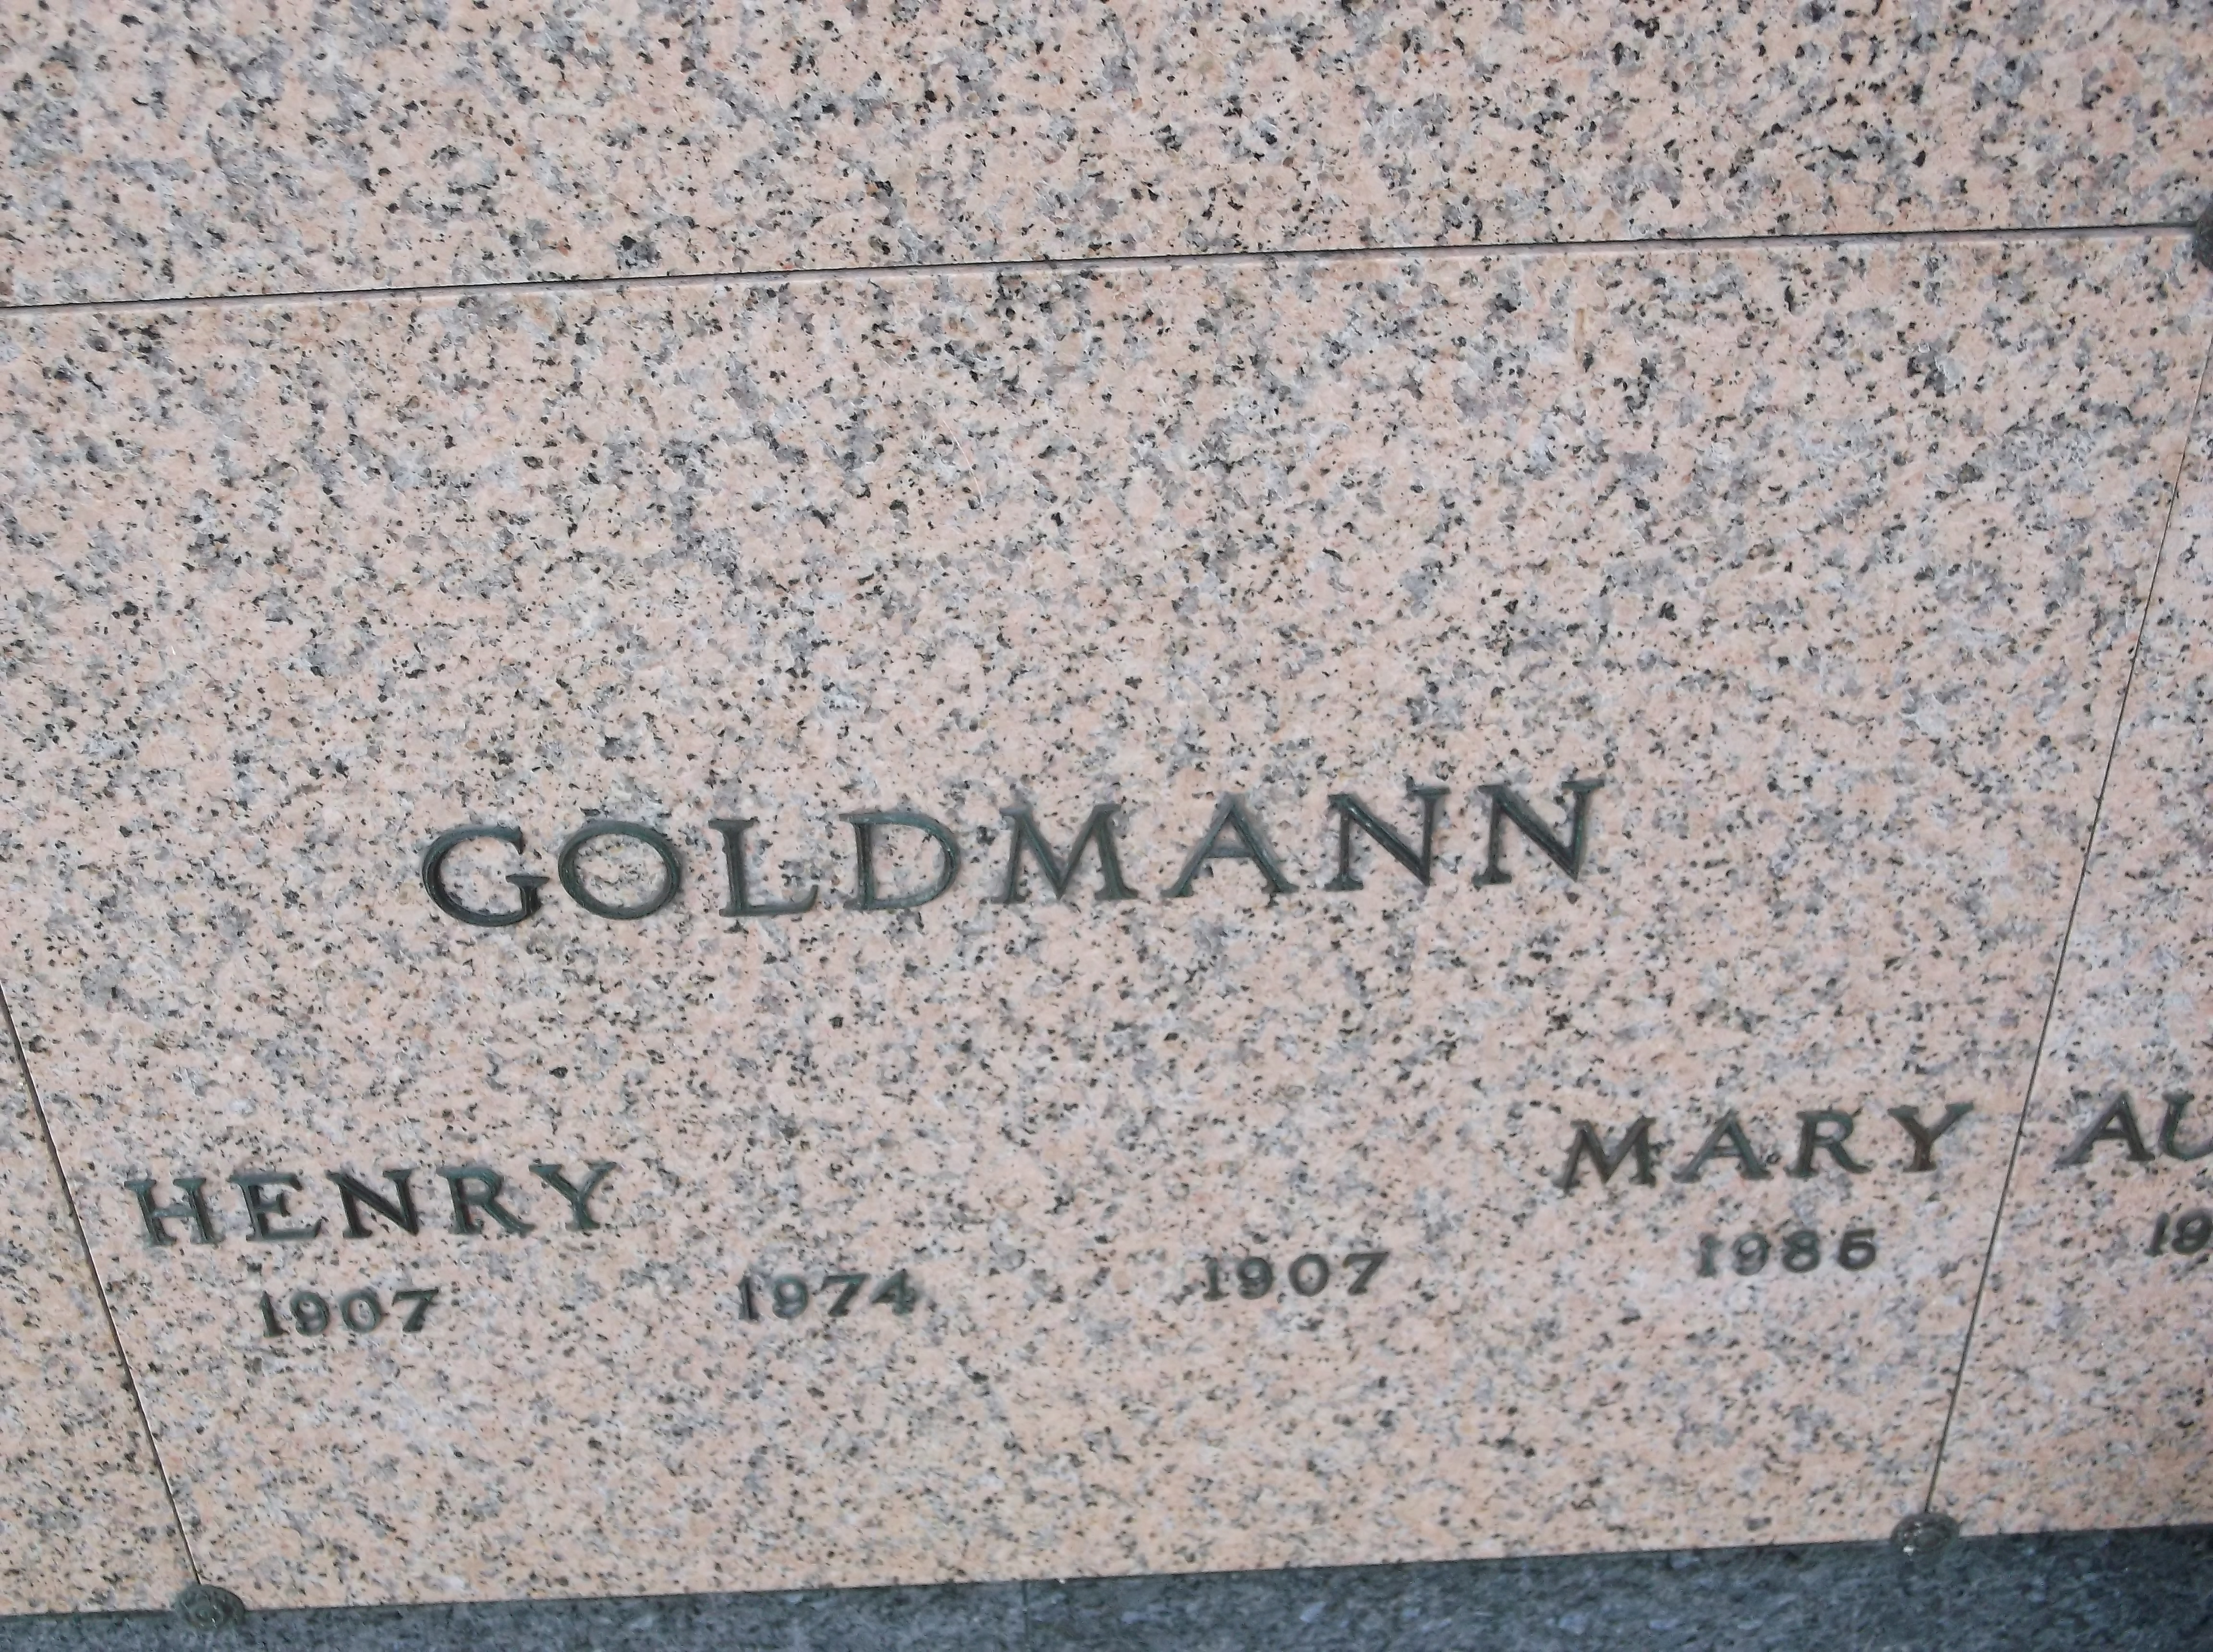 Mary Goldmann